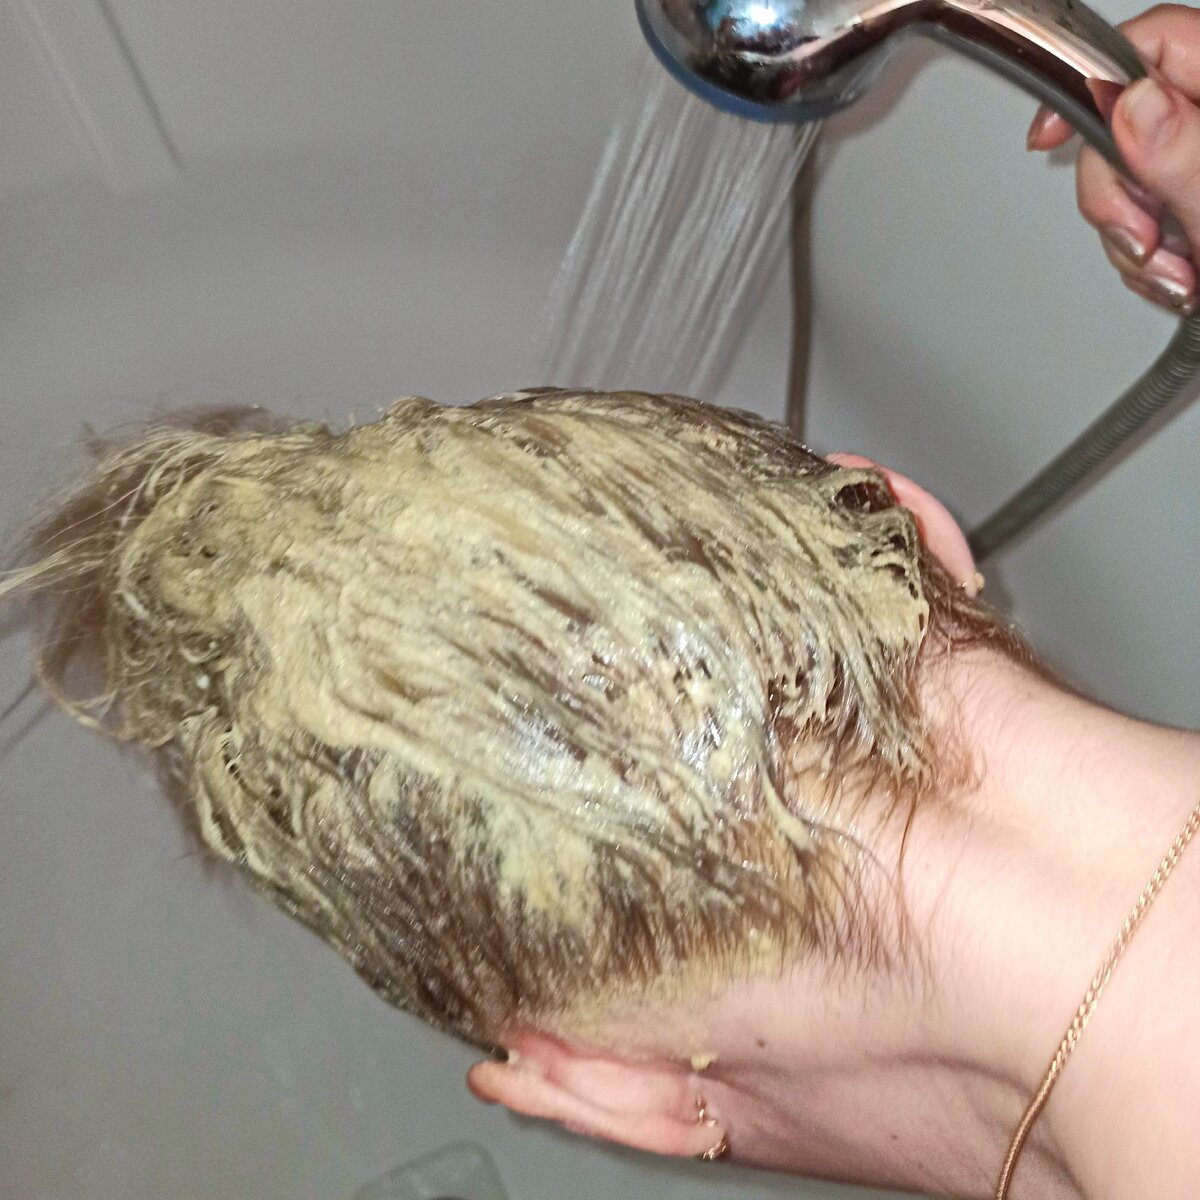 Волосы после мытья как грязные. Волосы в муке. Мытье головы горчицей. Стрижка на сожженные волосы. Потные волосы.